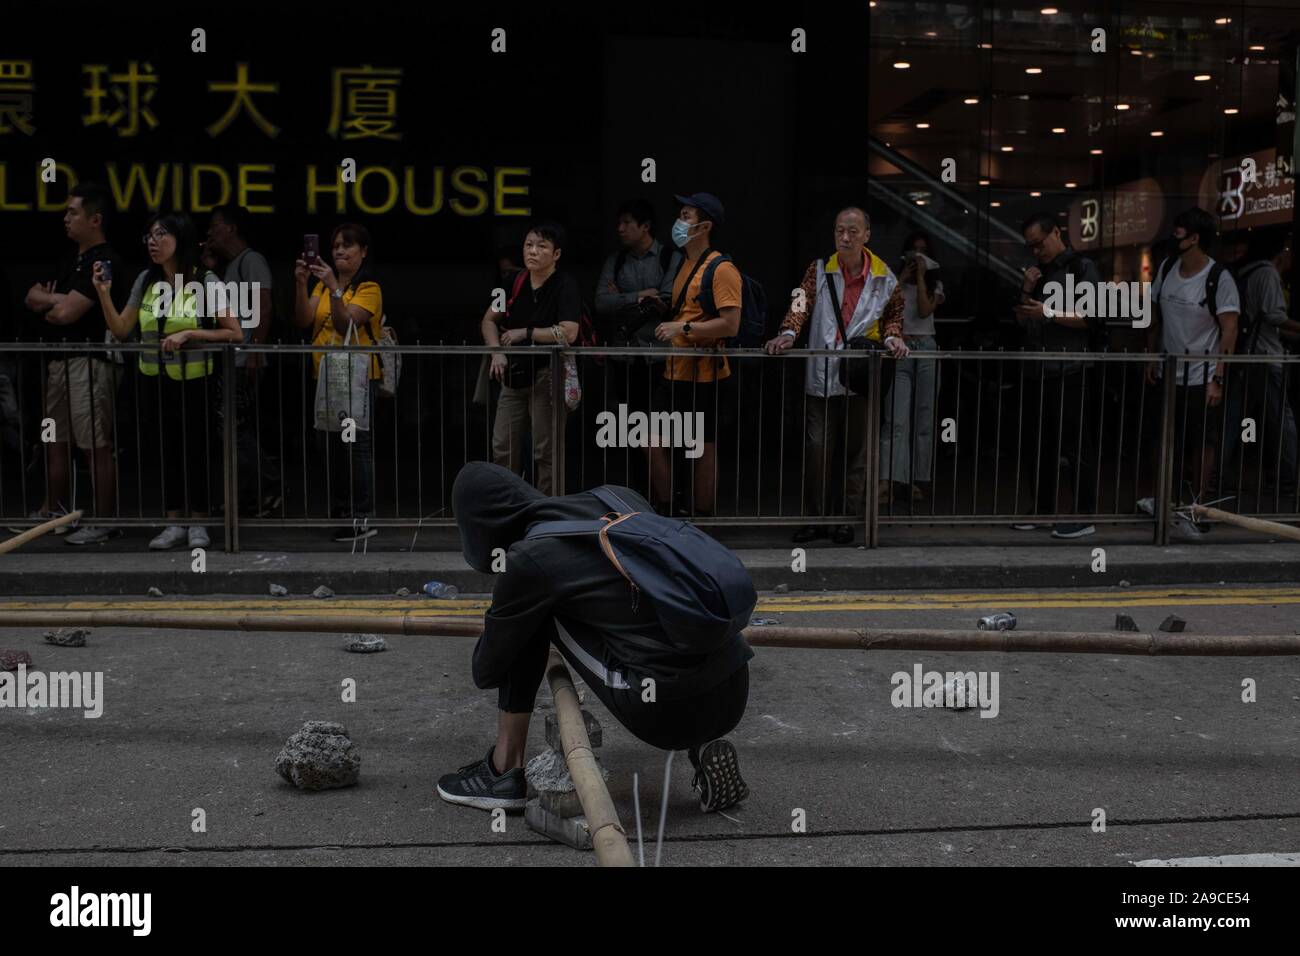 Un manifestante stringe un bastone di bambù per bloccare il Des Voeux Road durante la dimostrazione.manifestanti hanno chiesto per un giorno di sciopero il terzo giorno consecutivo. Governo anti-manifestanti hanno bloccato le strade e gli accessi della metropolitana nella zona centrale di Hong Kong. Un relativamente calma giorno dopo la violenza era tornato in risposta ad azioni di polizia lunedì quando almeno due manifestanti sono stati girati e molti altri feriti. Foto Stock